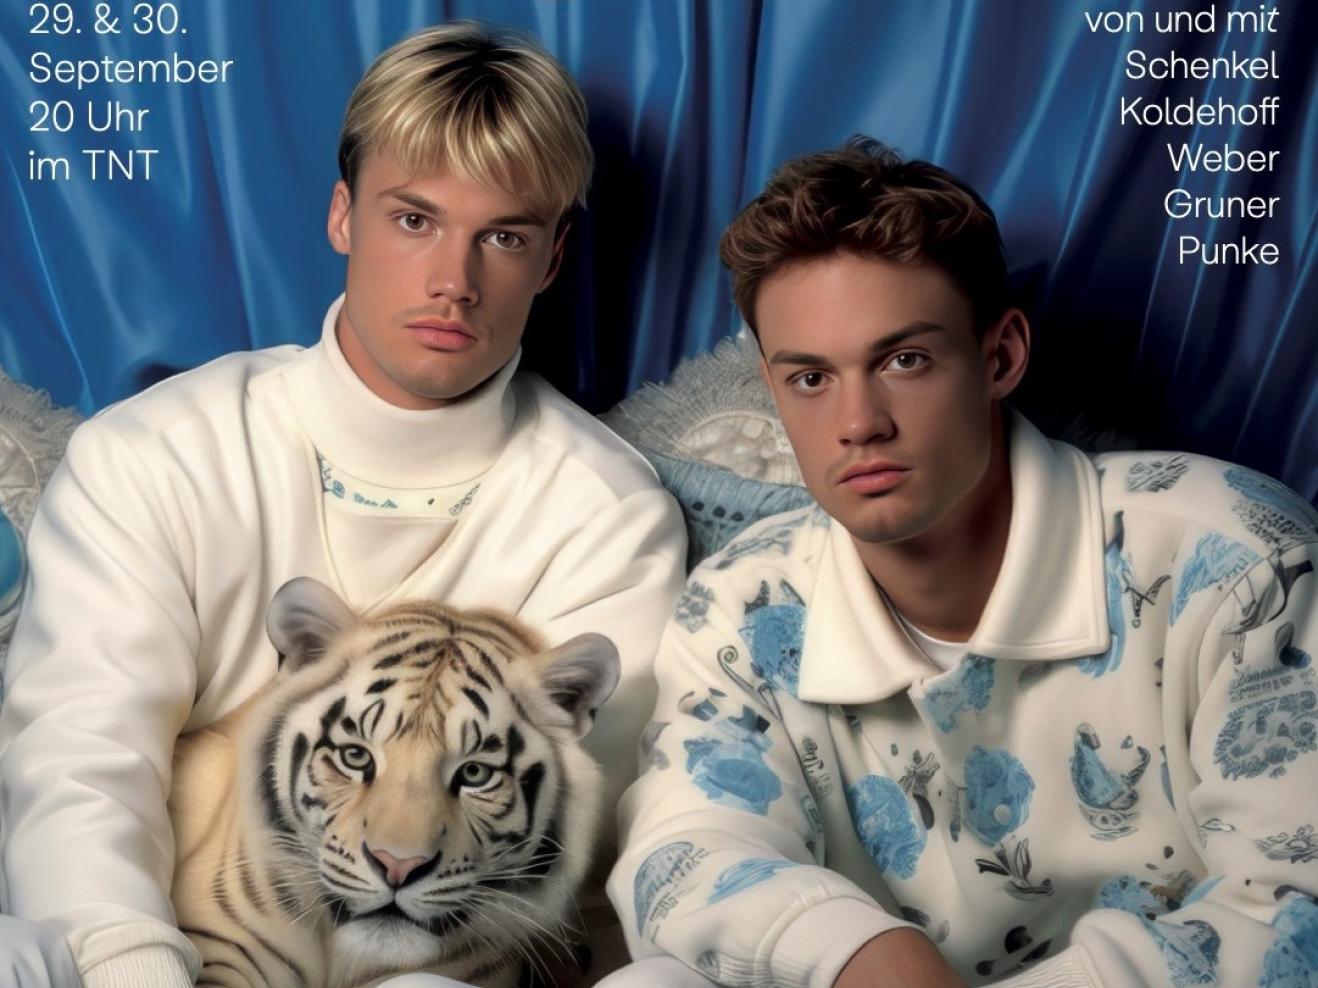 Zwei Männer sitzen nebeneinander und blicken in die Kamera. Beide sind in hellen Farbtönen, größenteils weiß bekleidet. Einer der Männer ist blond, der andere dunkelhaarig. Der linke Mann hat einen kleinen weißen Tiger auf dem Schoß.